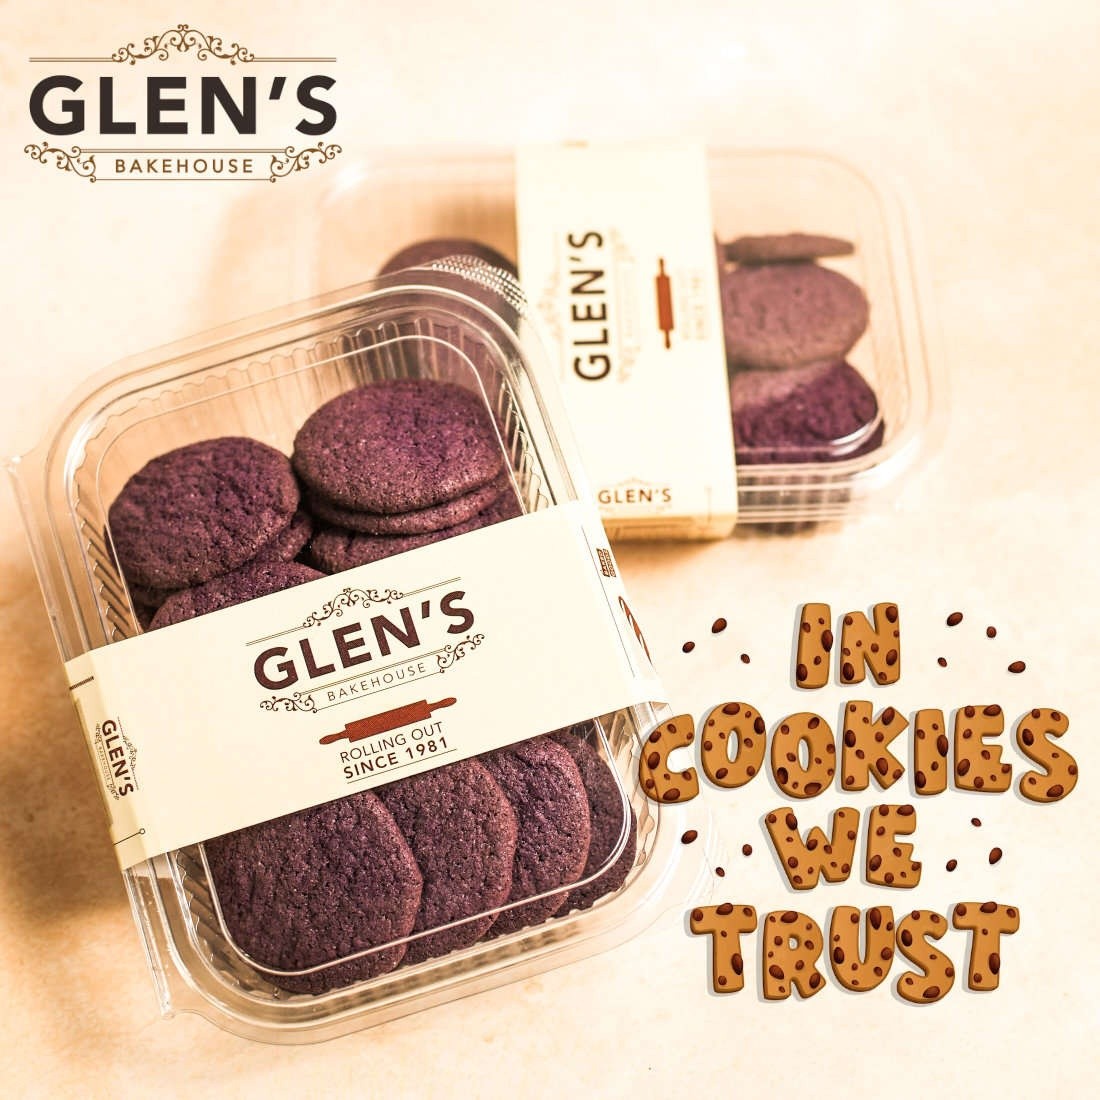 Stunning Social Media Graphics Design for Glen's Bakehouse Image 9